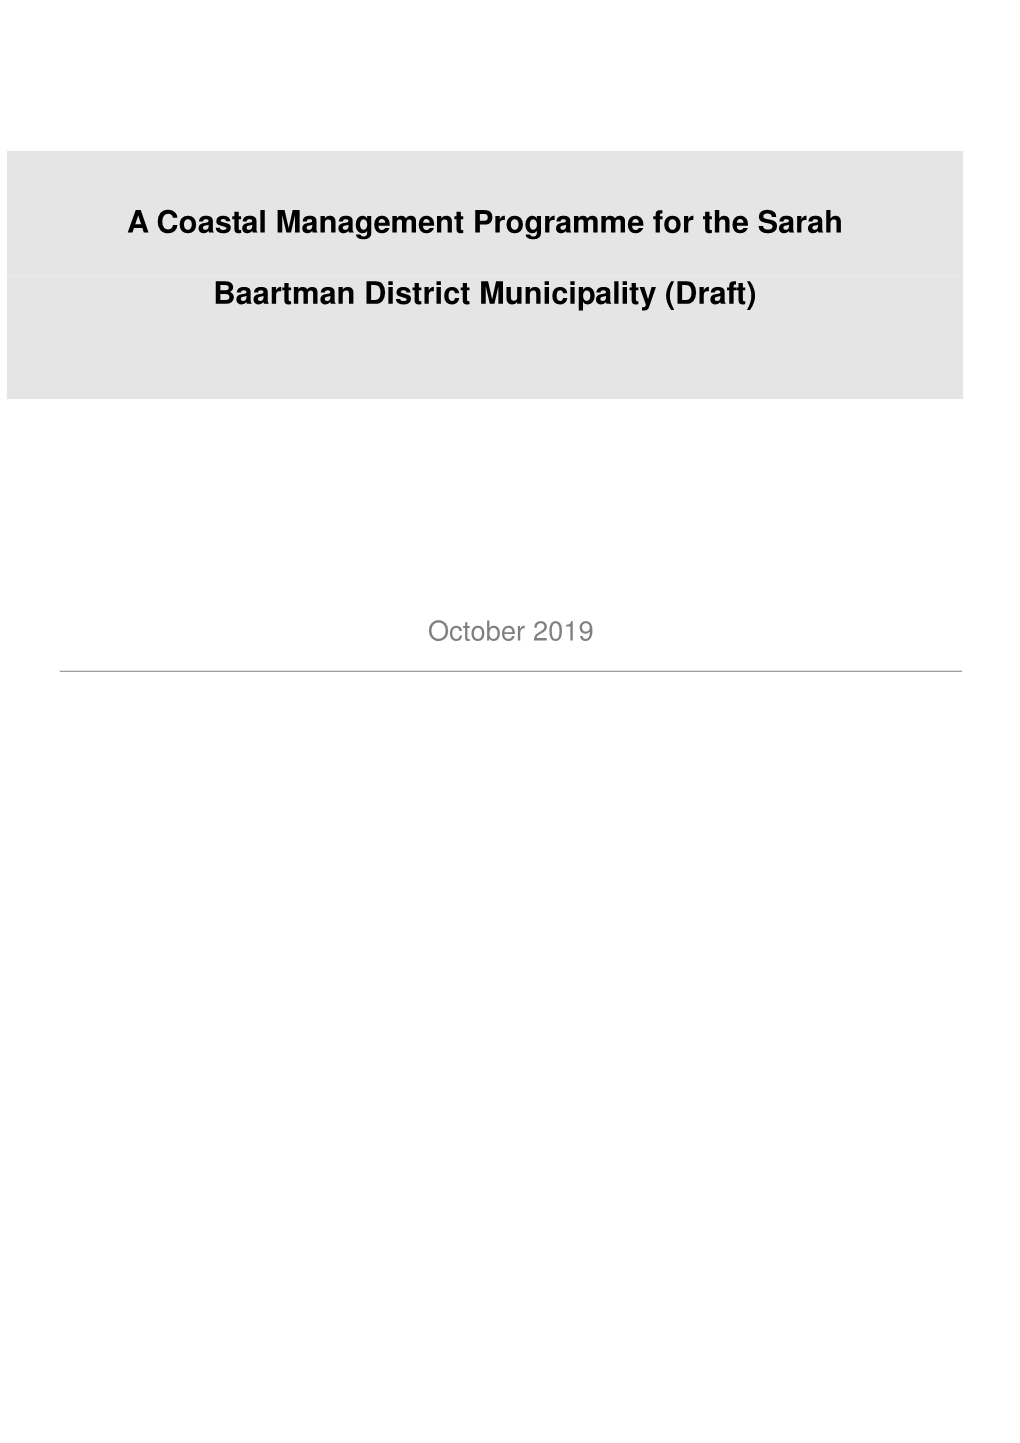 Sarah Baartman District Municipality Coastal Management Programme